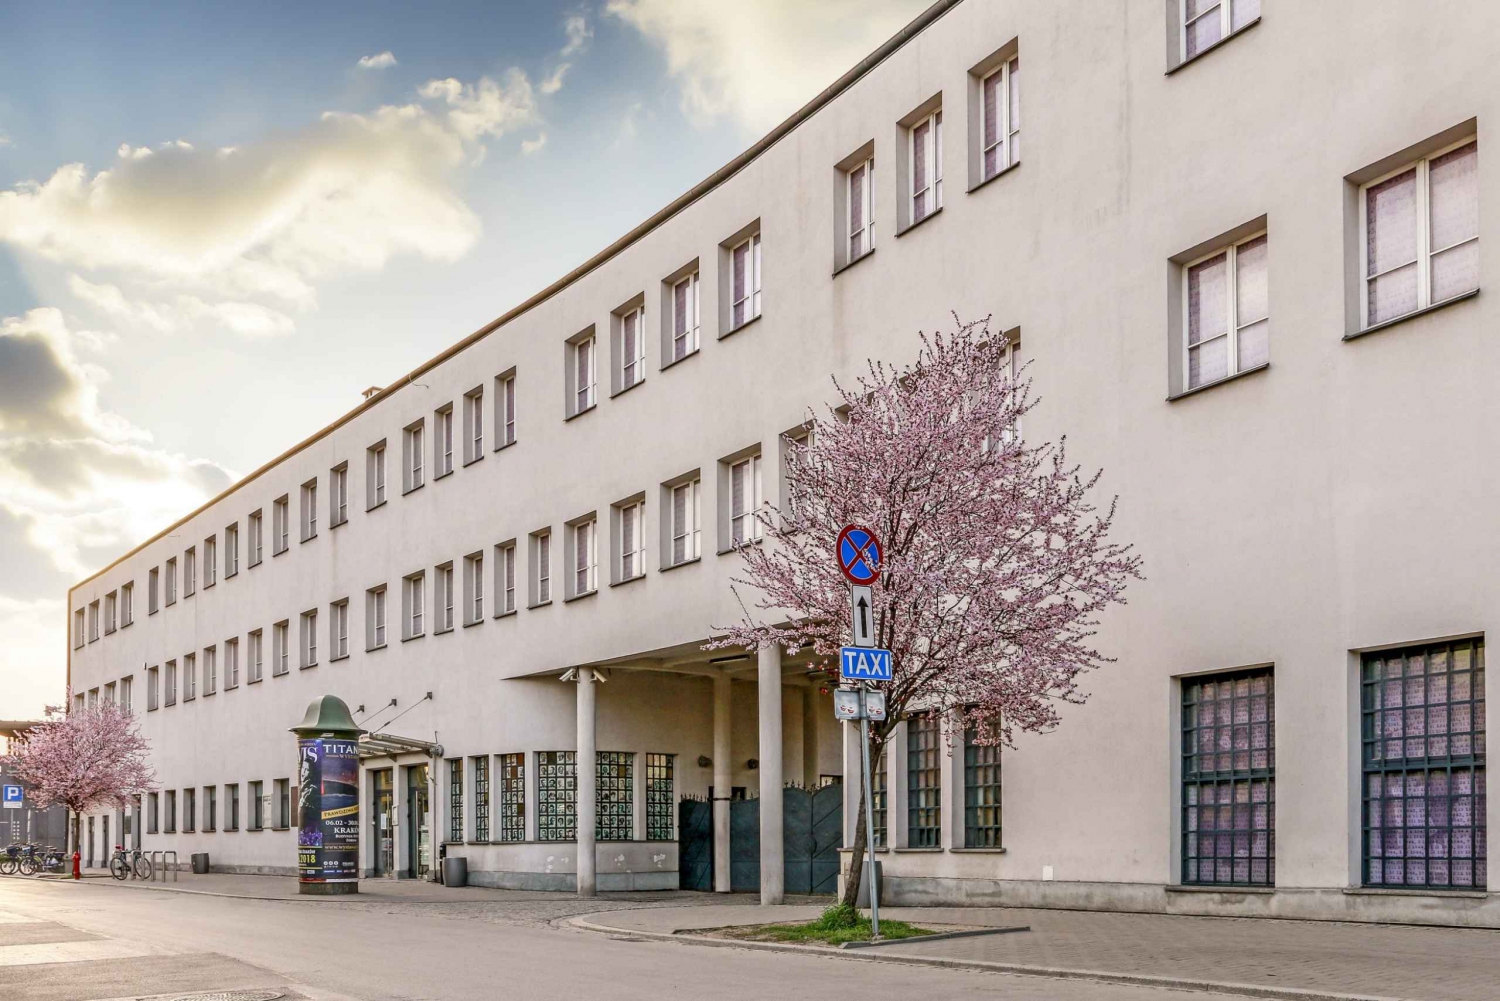 Krakova: Schindlerin tehdas ja getto.